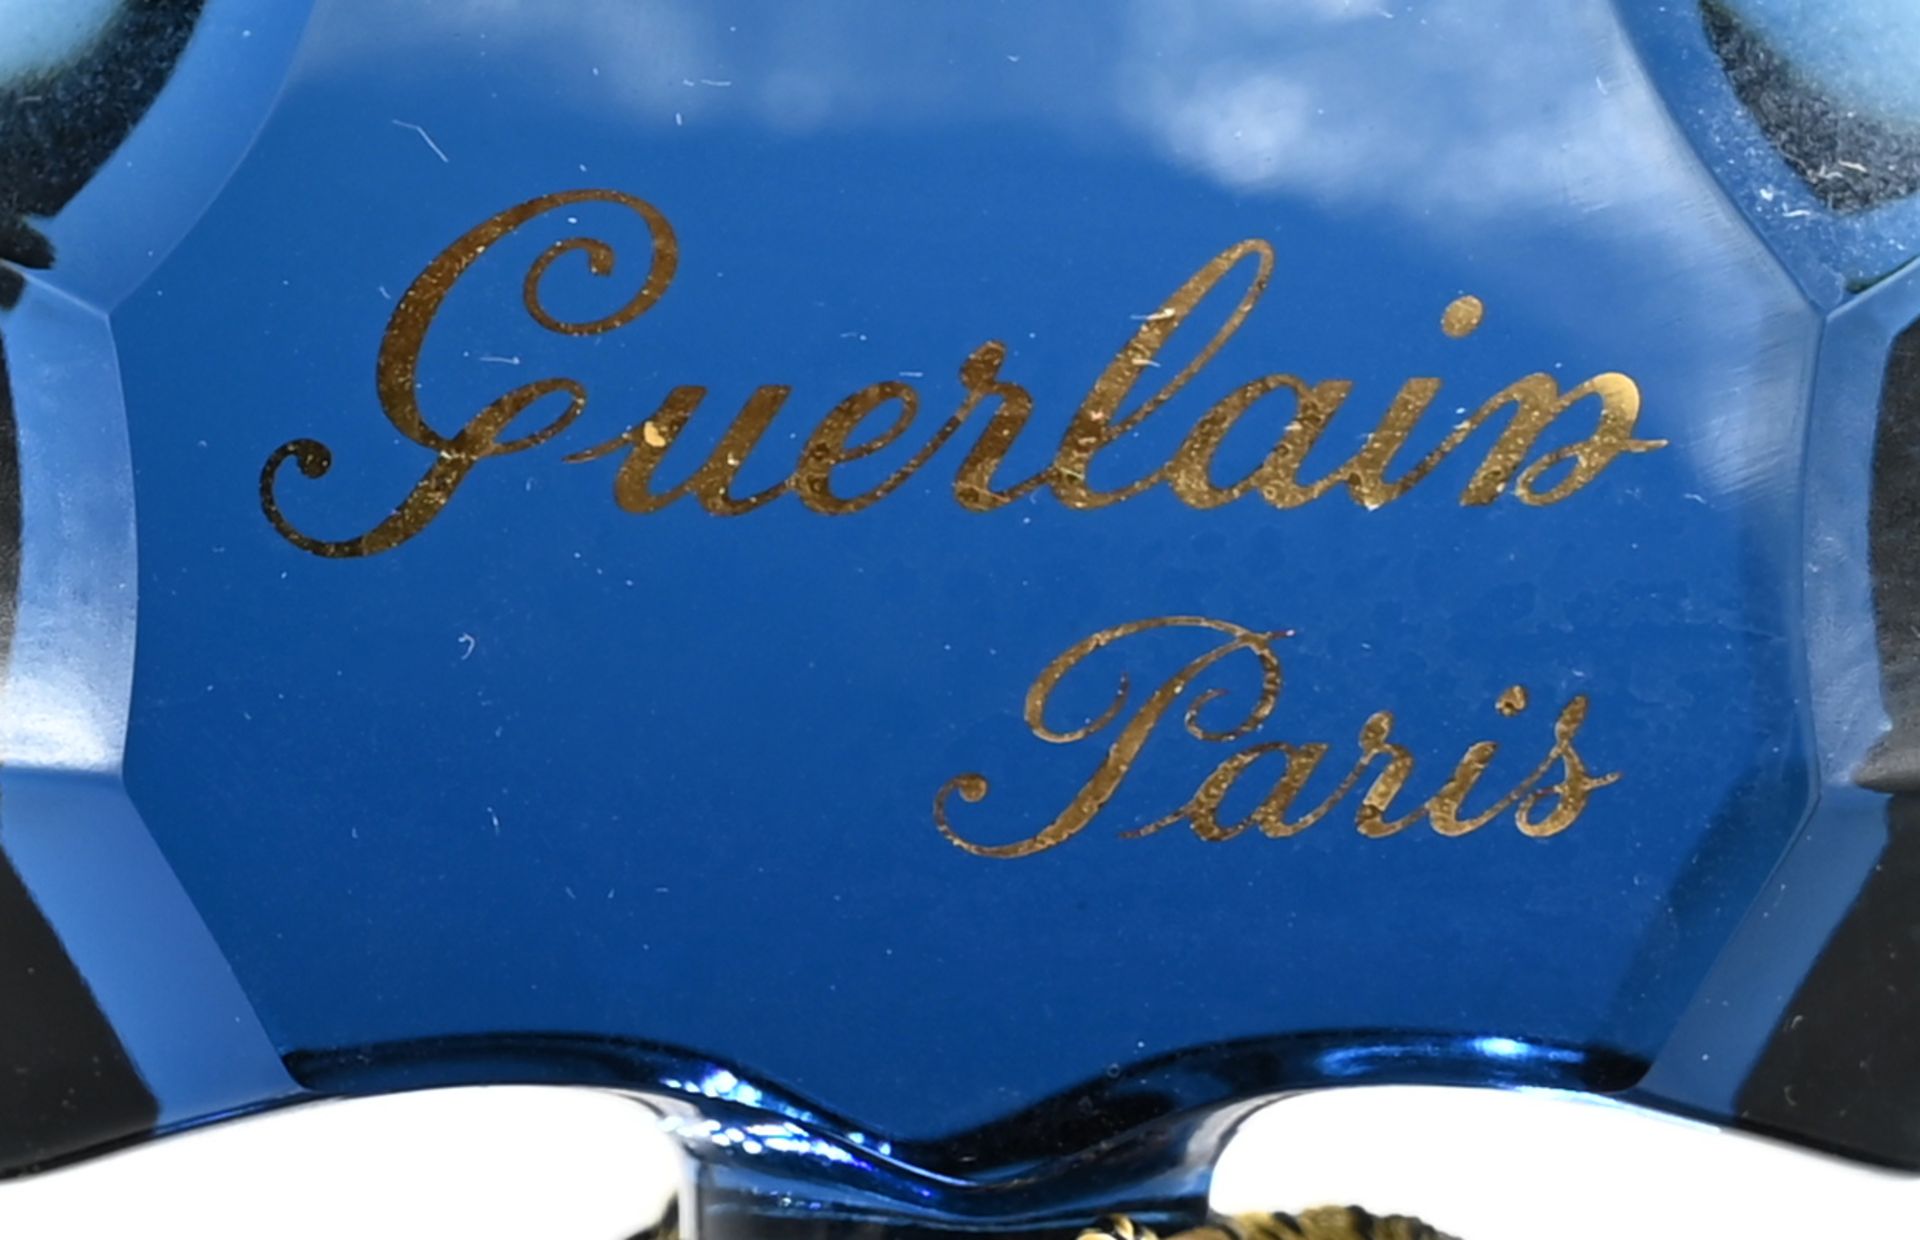 1 Parfümflacon "Shalimar" von GUERLAIN, Paris, mit Flüssigkeit, Gesamthöhe ca. 38cm, Gsp. - Bild 3 aus 3